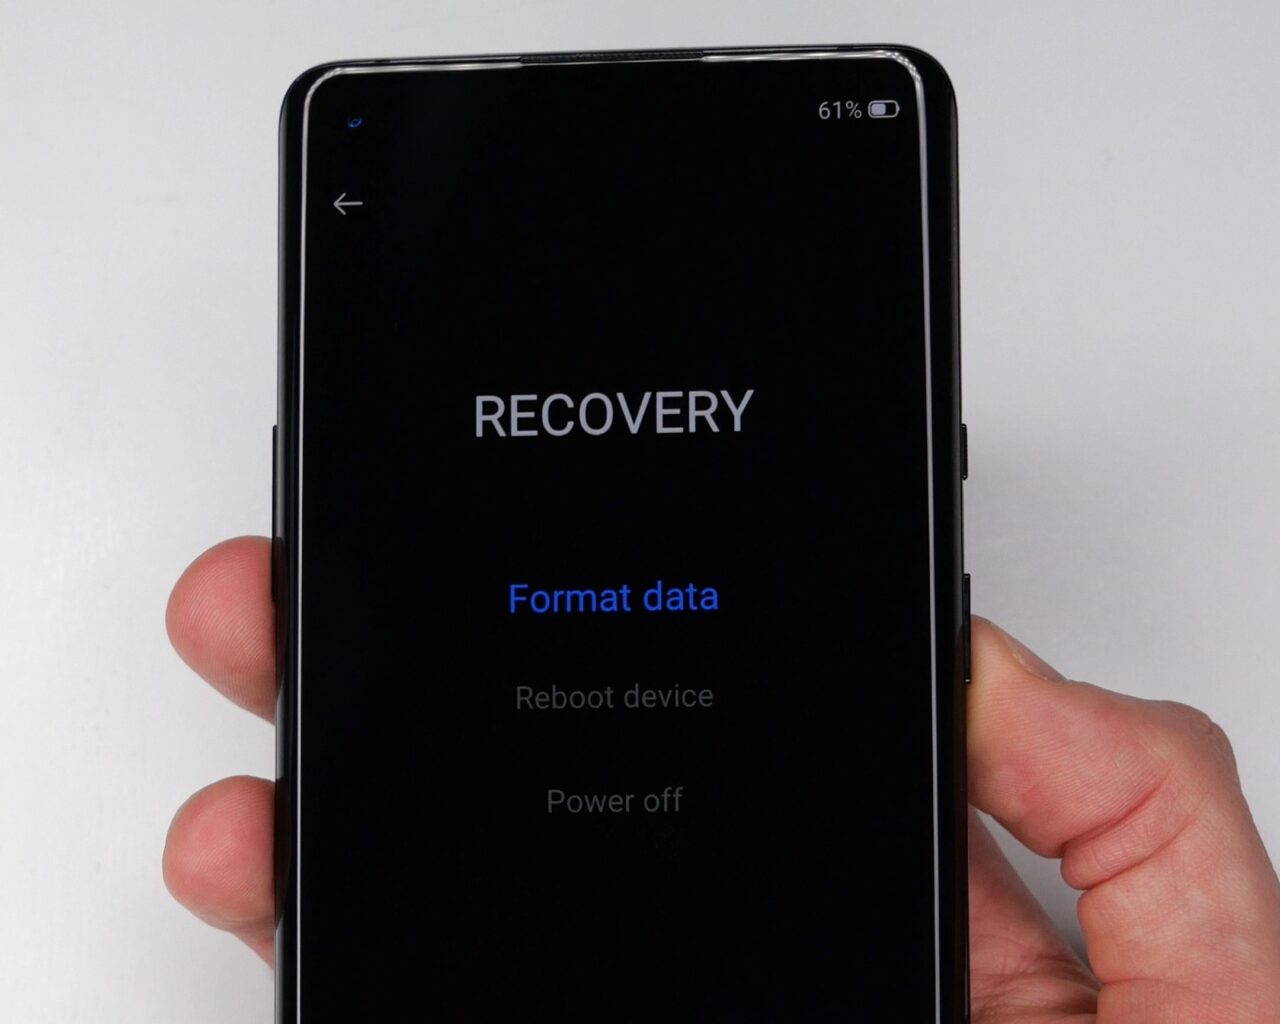 Dłoń trzymająca smartfon wyświetlający menu odzyskiwania z opcjami "Format data", "Reboot device" i "Power off".